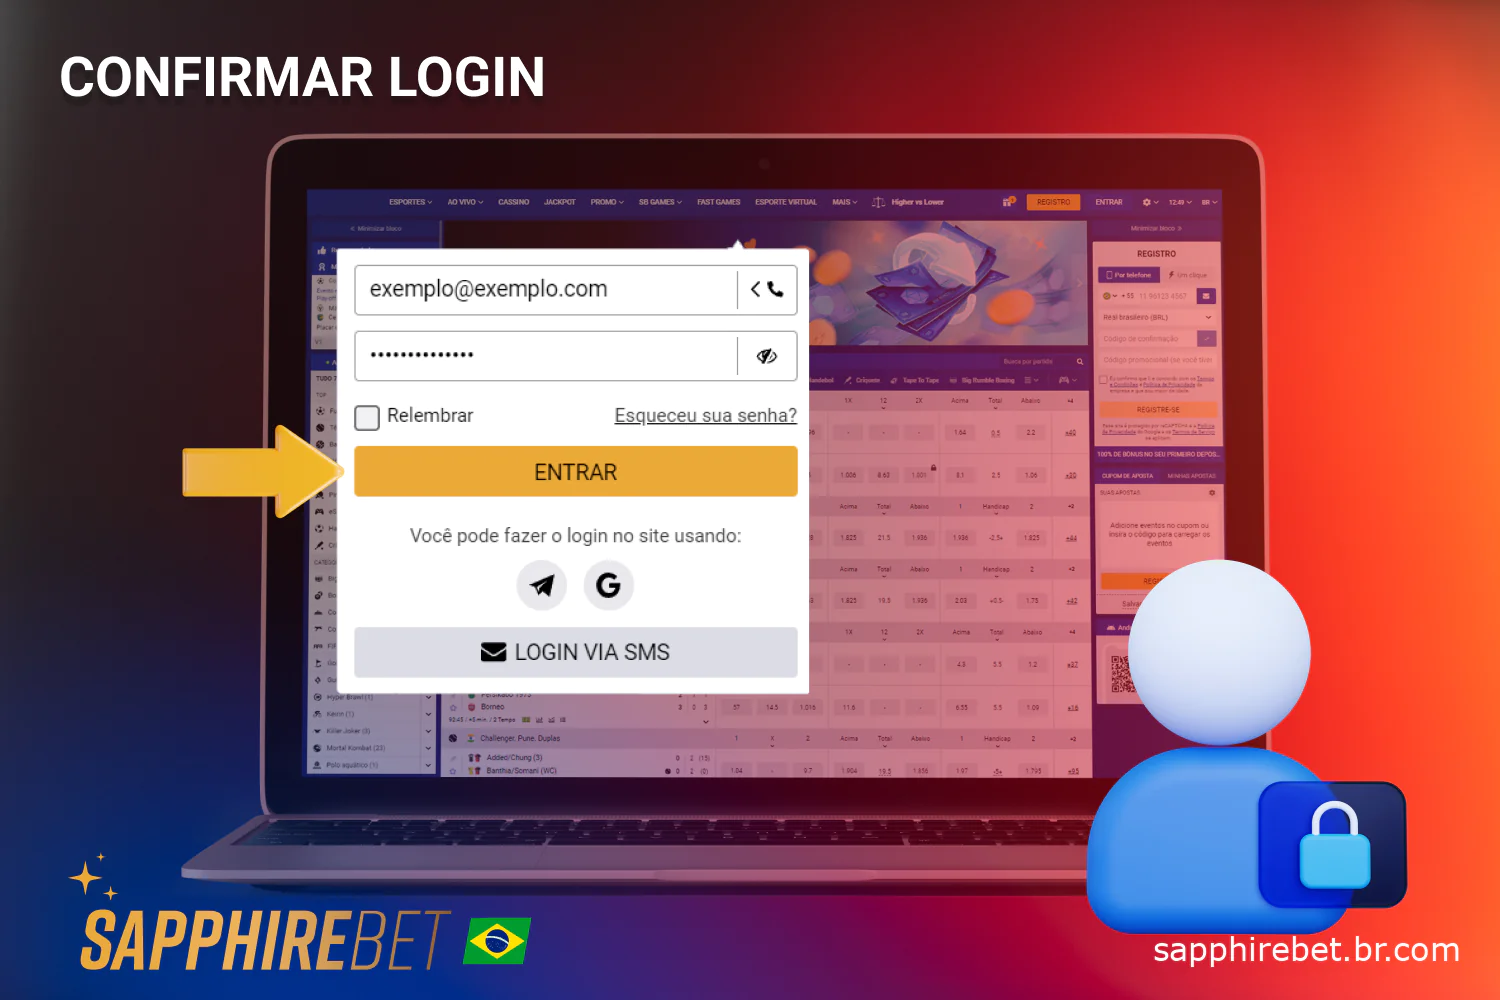 Os usuários brasileiros devem clicar no botão apropriado para confirmar o login no Sapphirebet